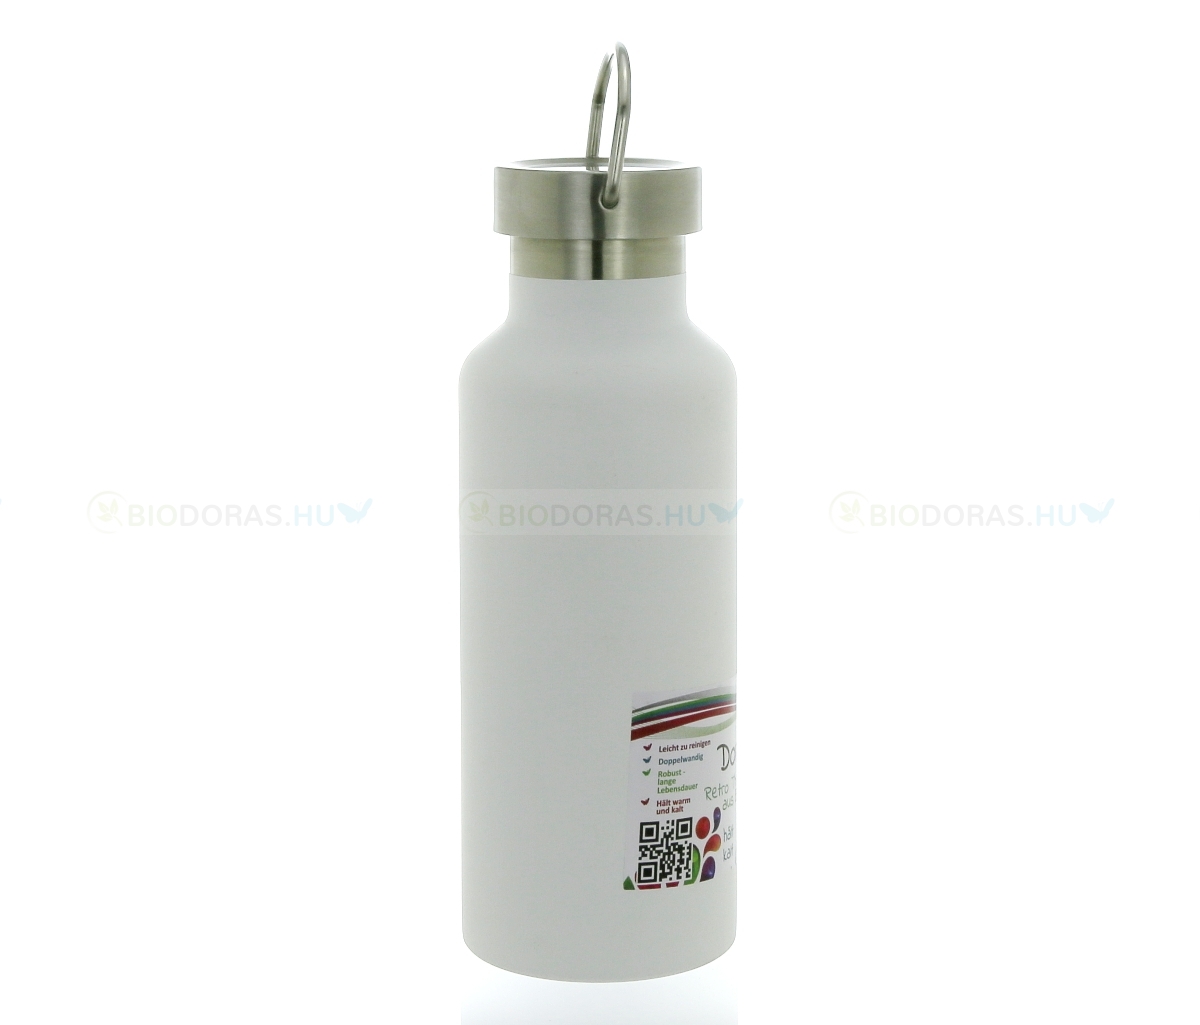 DORAS Retro termosz mozgatható füllel - Rozsdamentes acél - Fehér - 500 ml